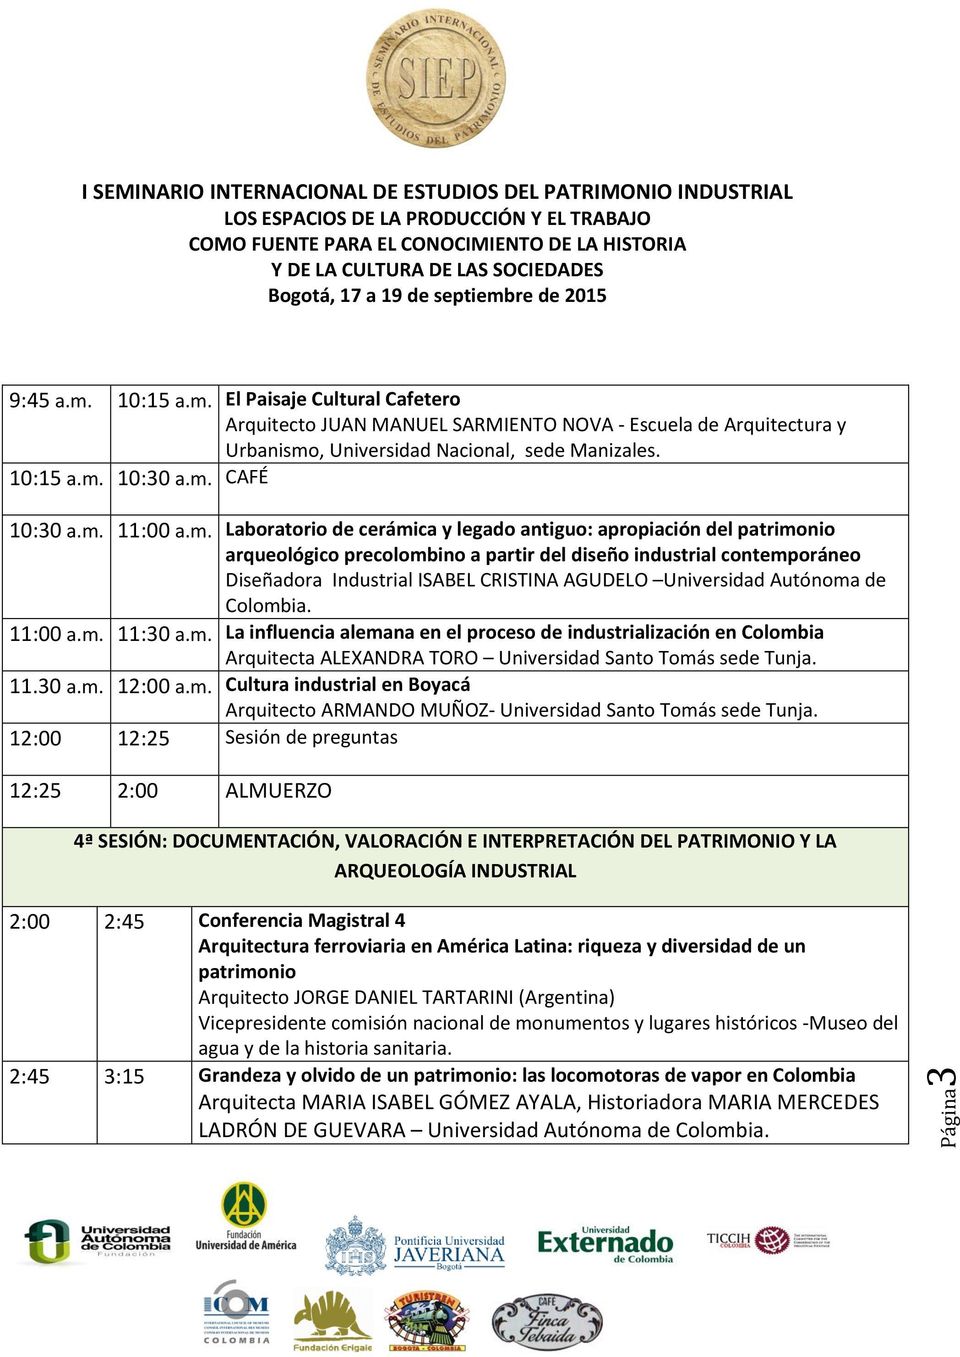 Universidad Autónoma de Colombia. 11:00 a.m. 11:30 a.m. La influencia alemana en el proceso de industrialización en Colombia Arquitecta ALEXANDRA TORO Universidad Santo Tomás sede Tunja. 11.30 a.m. 12:00 a.